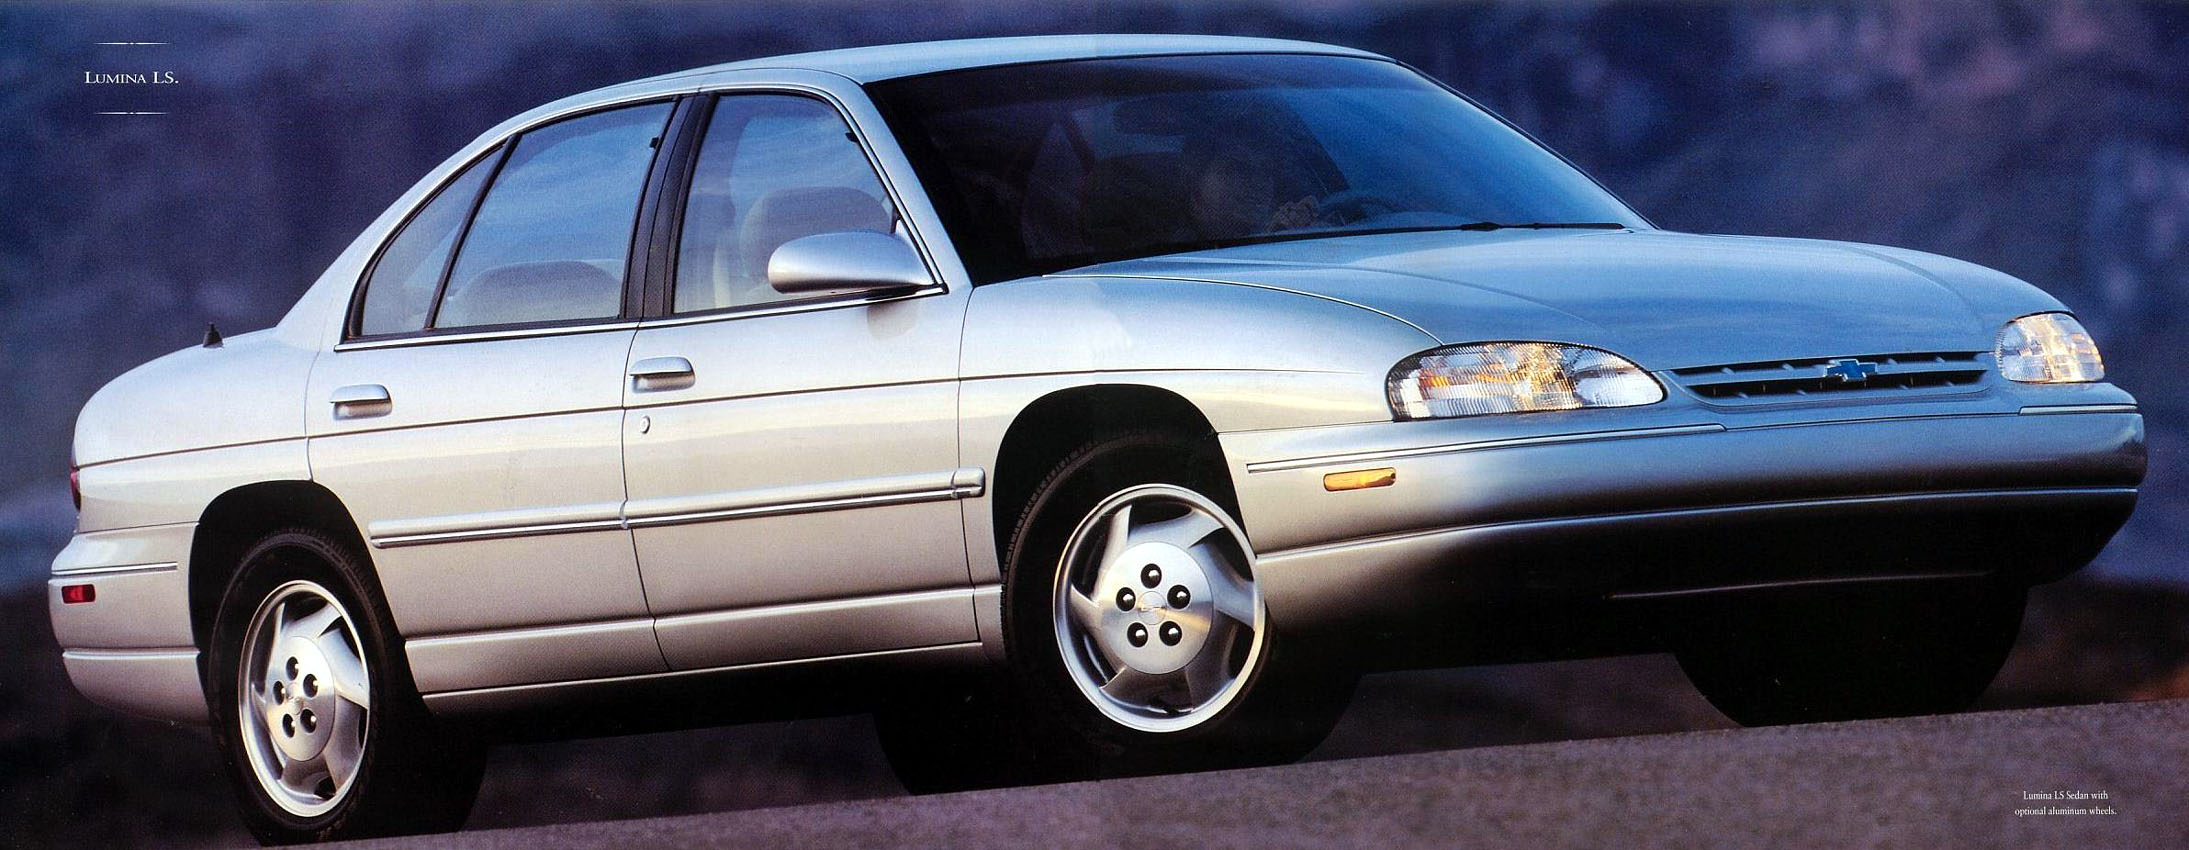 1995_Chevrolet_Lumina-10-11